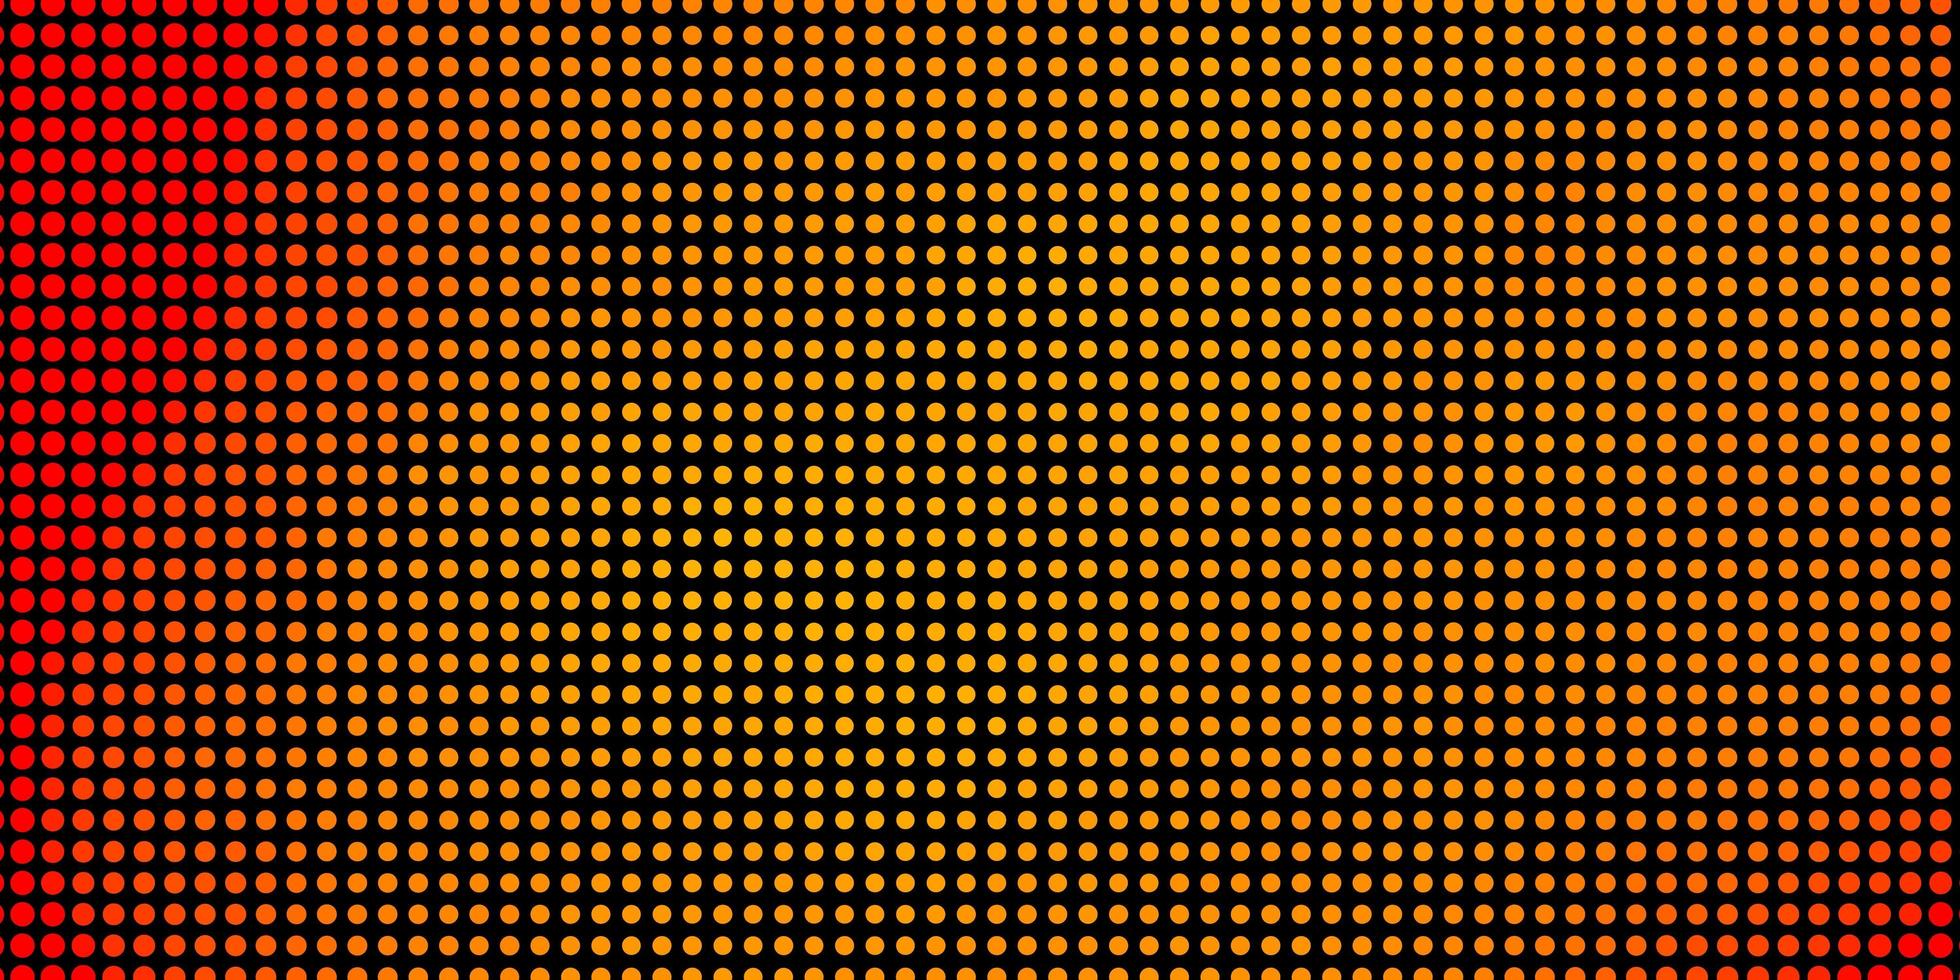 sfondo vettoriale arancione chiaro con cerchi illustrazione colorata con punti sfumati in stile natura modello per annunci aziendali for